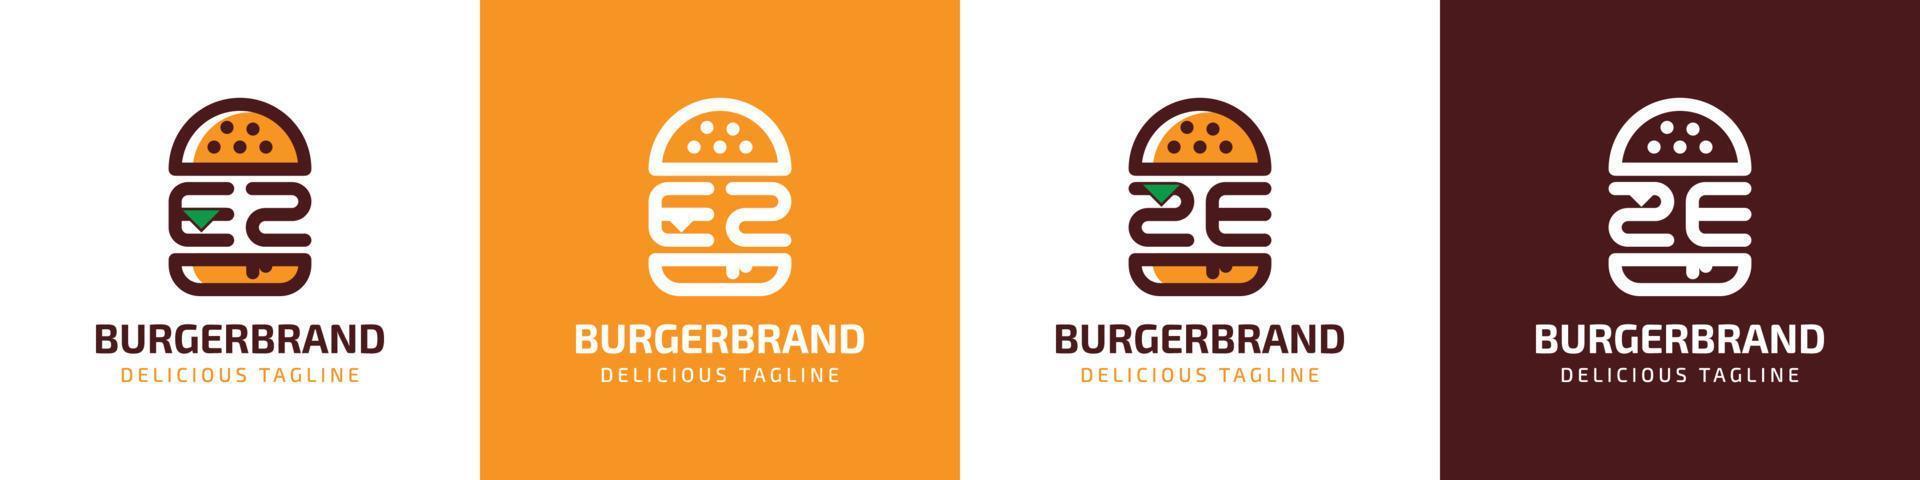 brev ez och ze burger logotyp, lämplig för några företag relaterad till burger med ez eller ze initialer. vektor